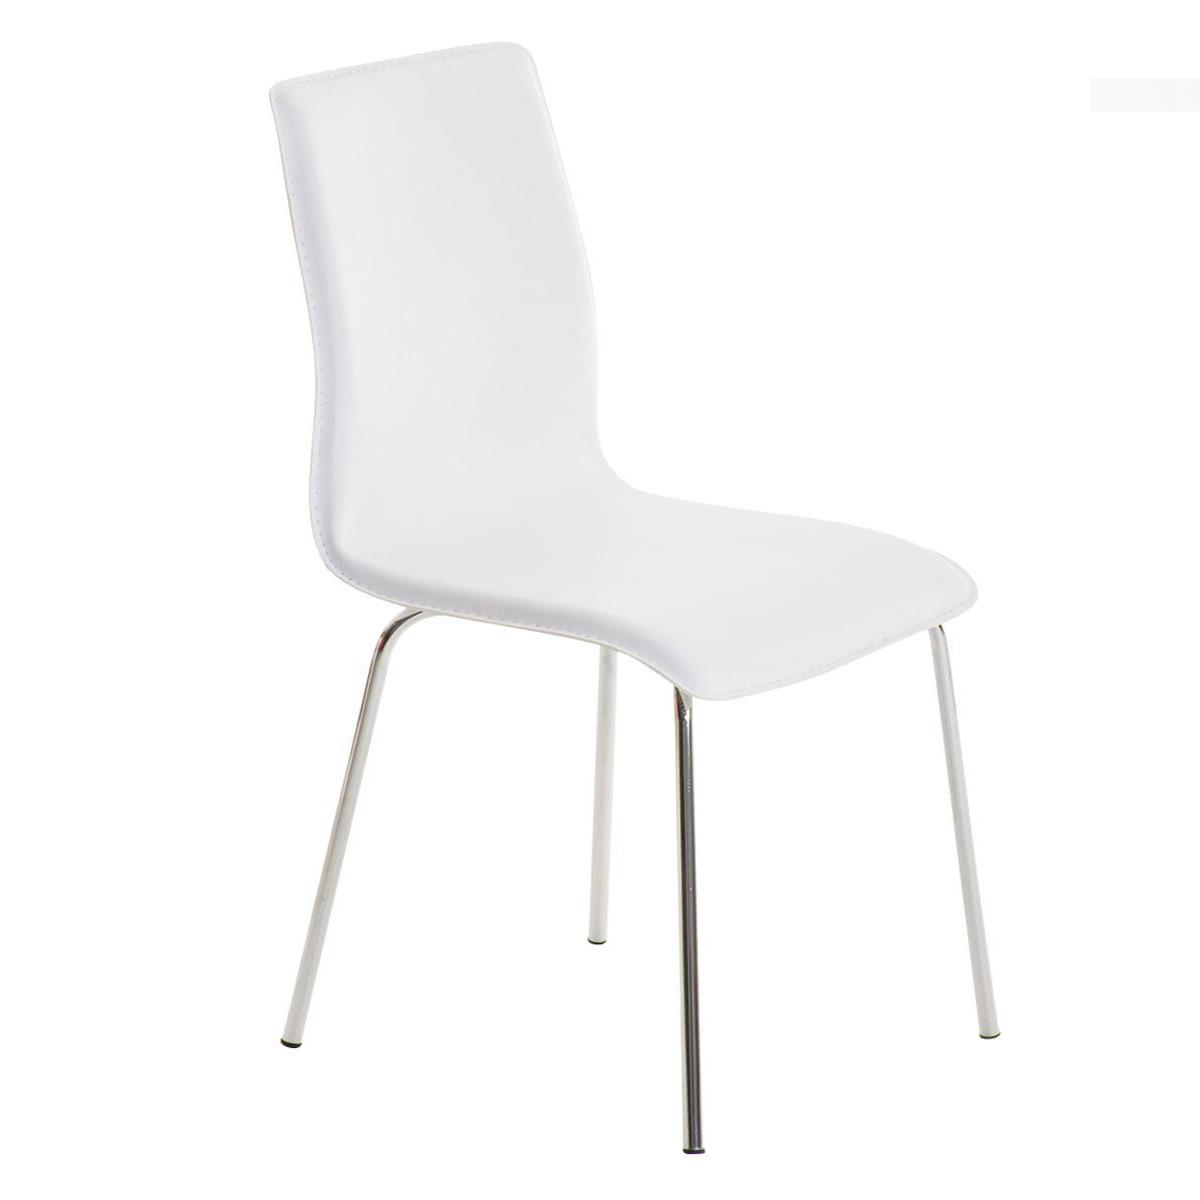 Chaise visiteur MIKI, Design exclusif, Revêtement Cuir, Blanc